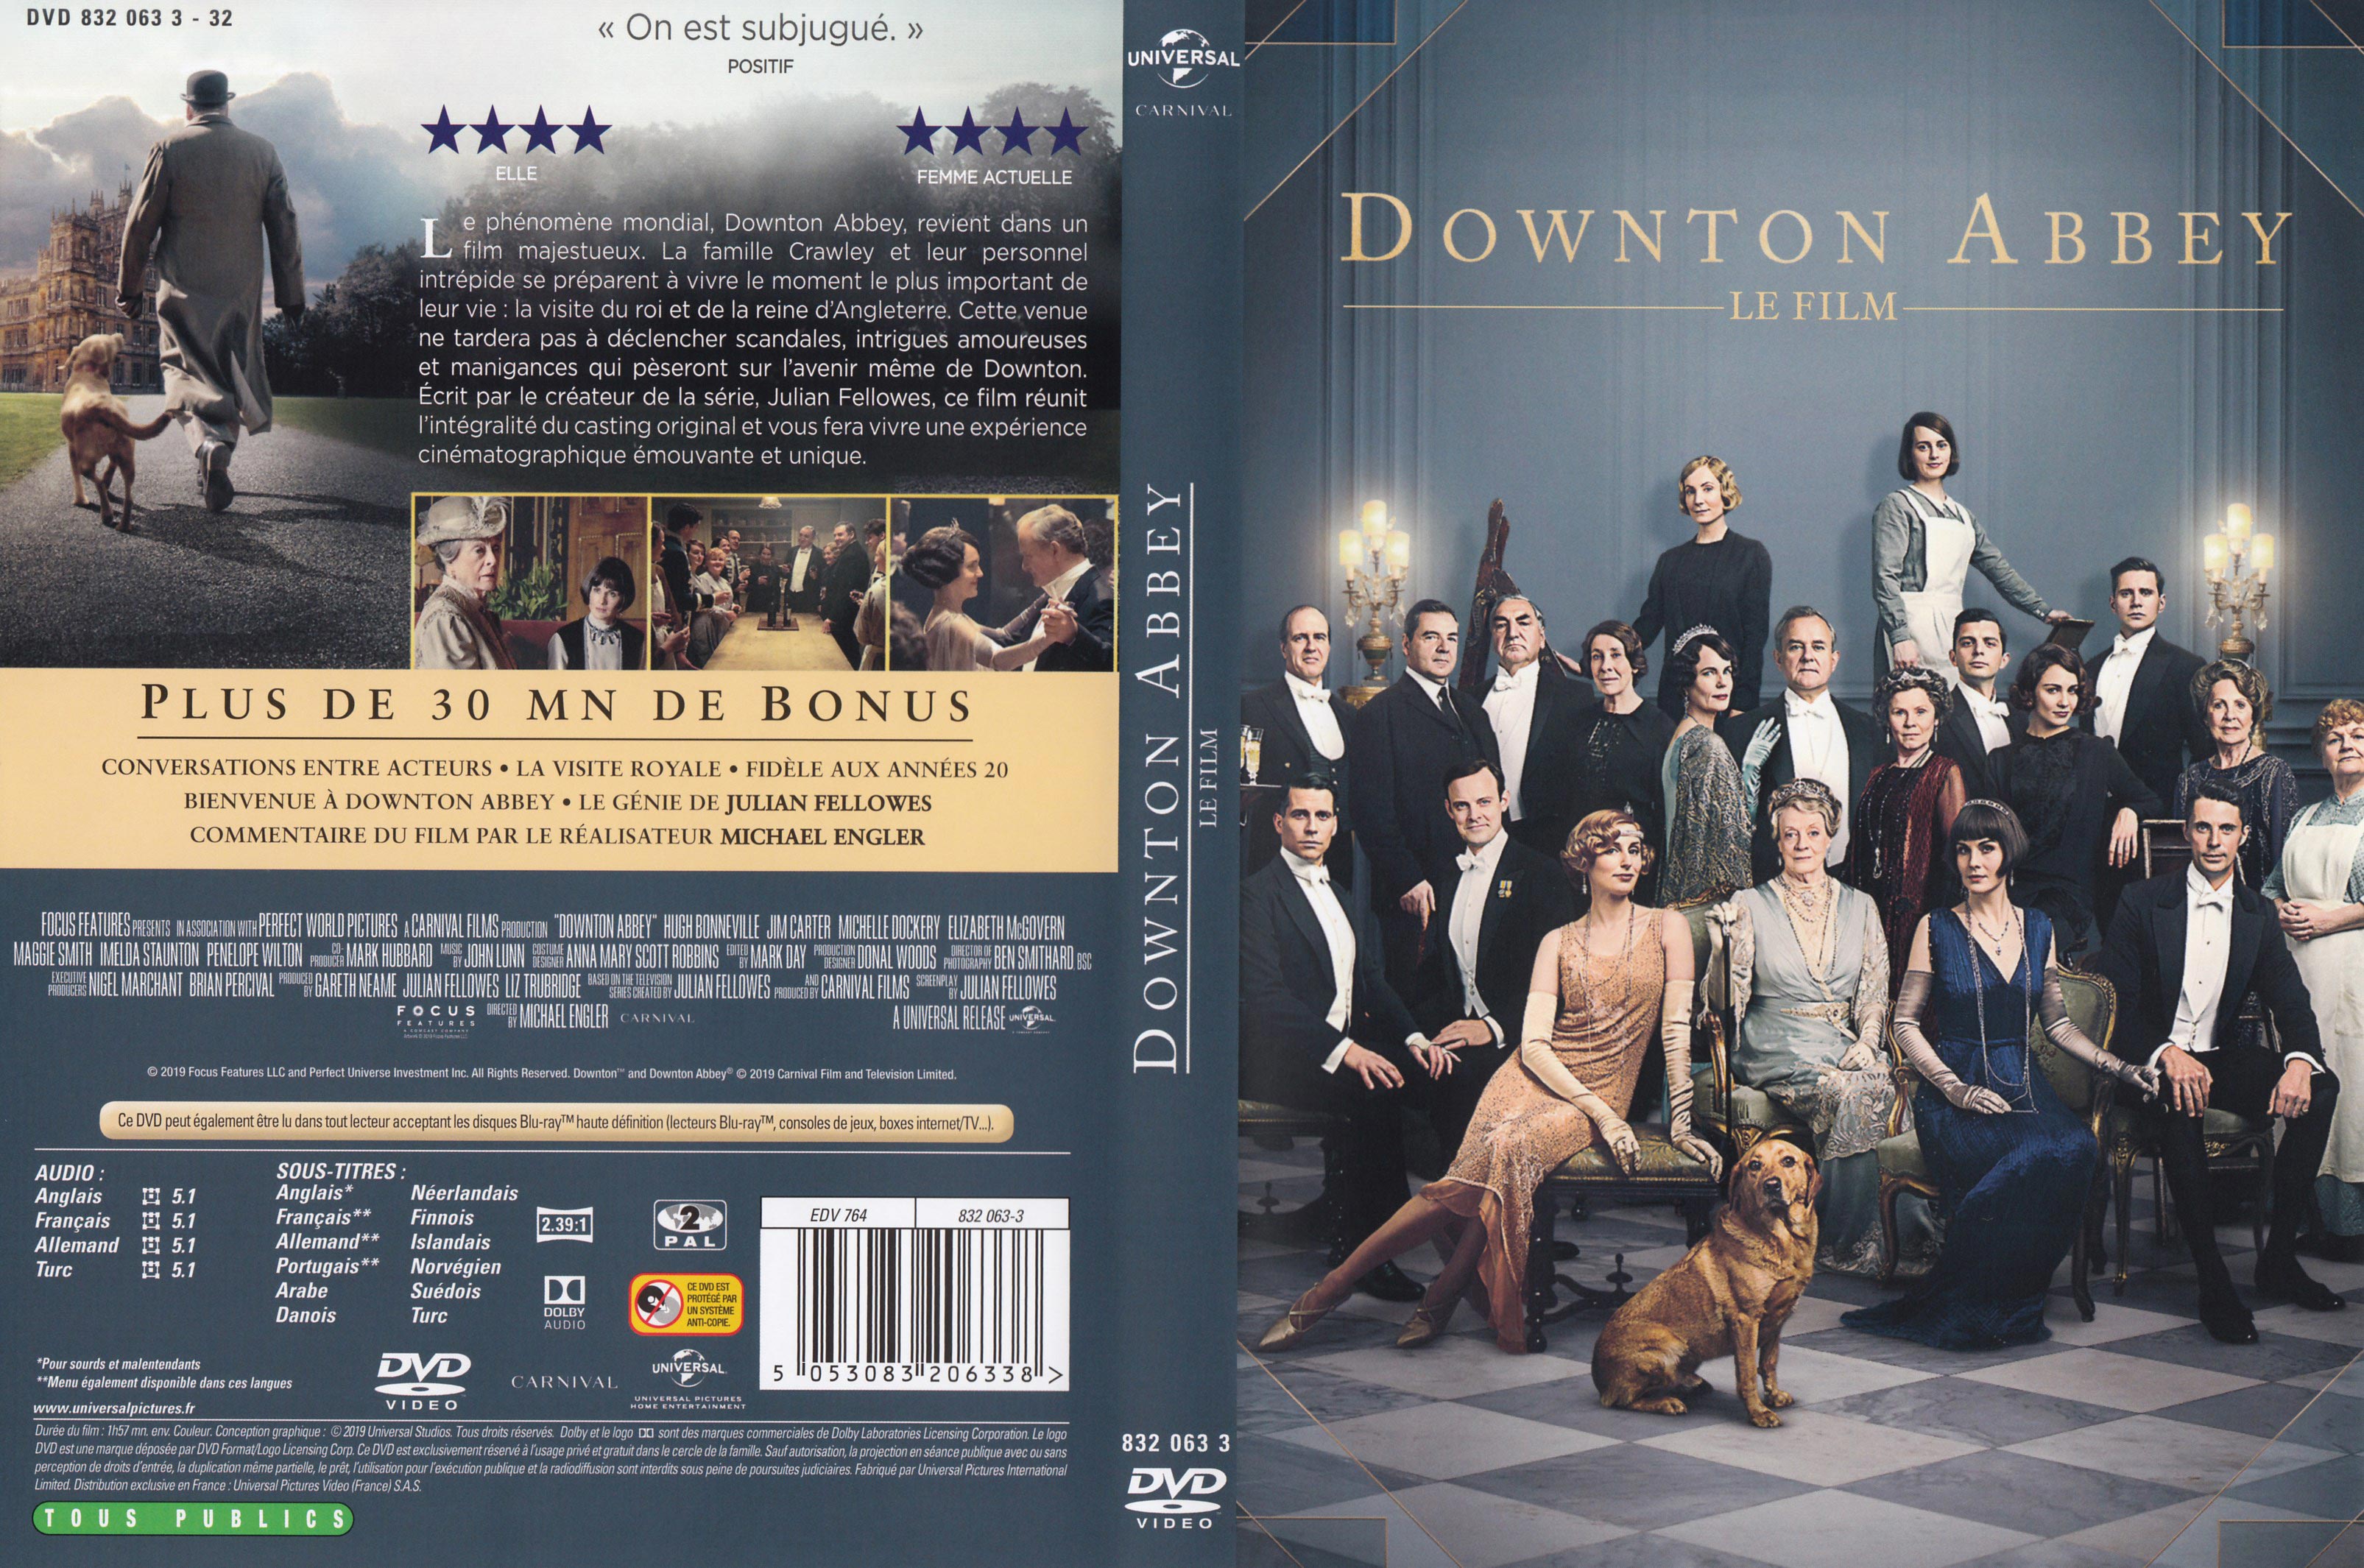 Jaquette DVD Downton Abbey (Le film)